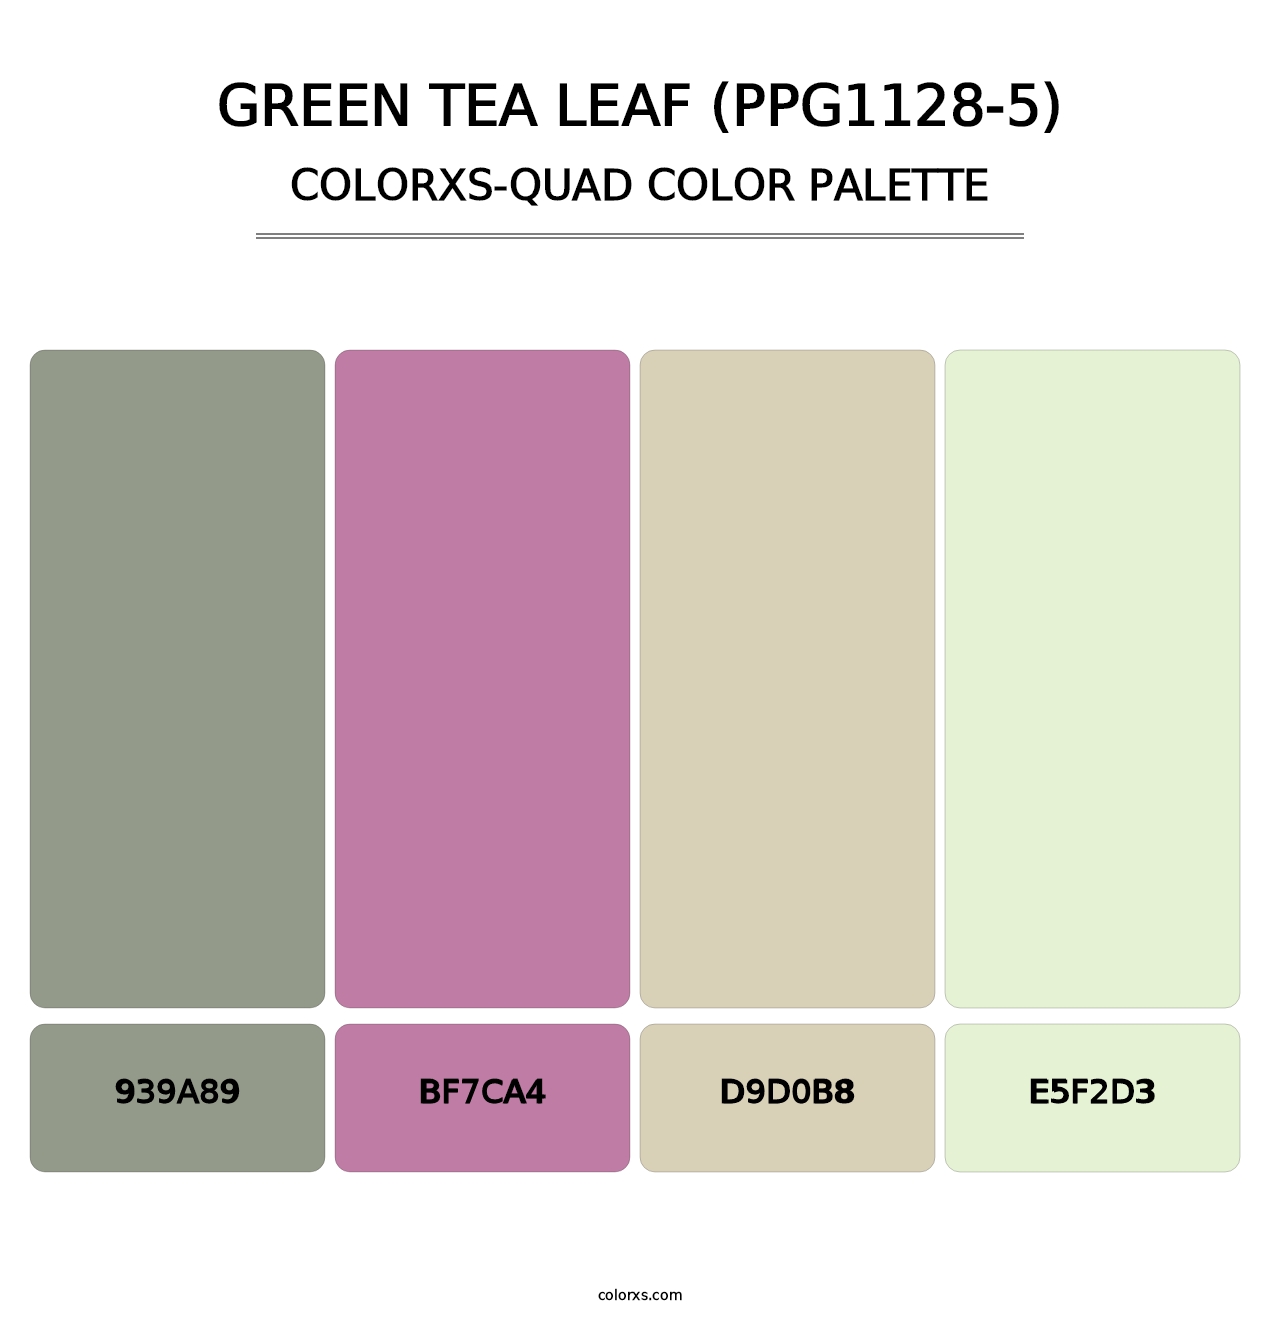 Green Tea Leaf (PPG1128-5) - Colorxs Quad Palette